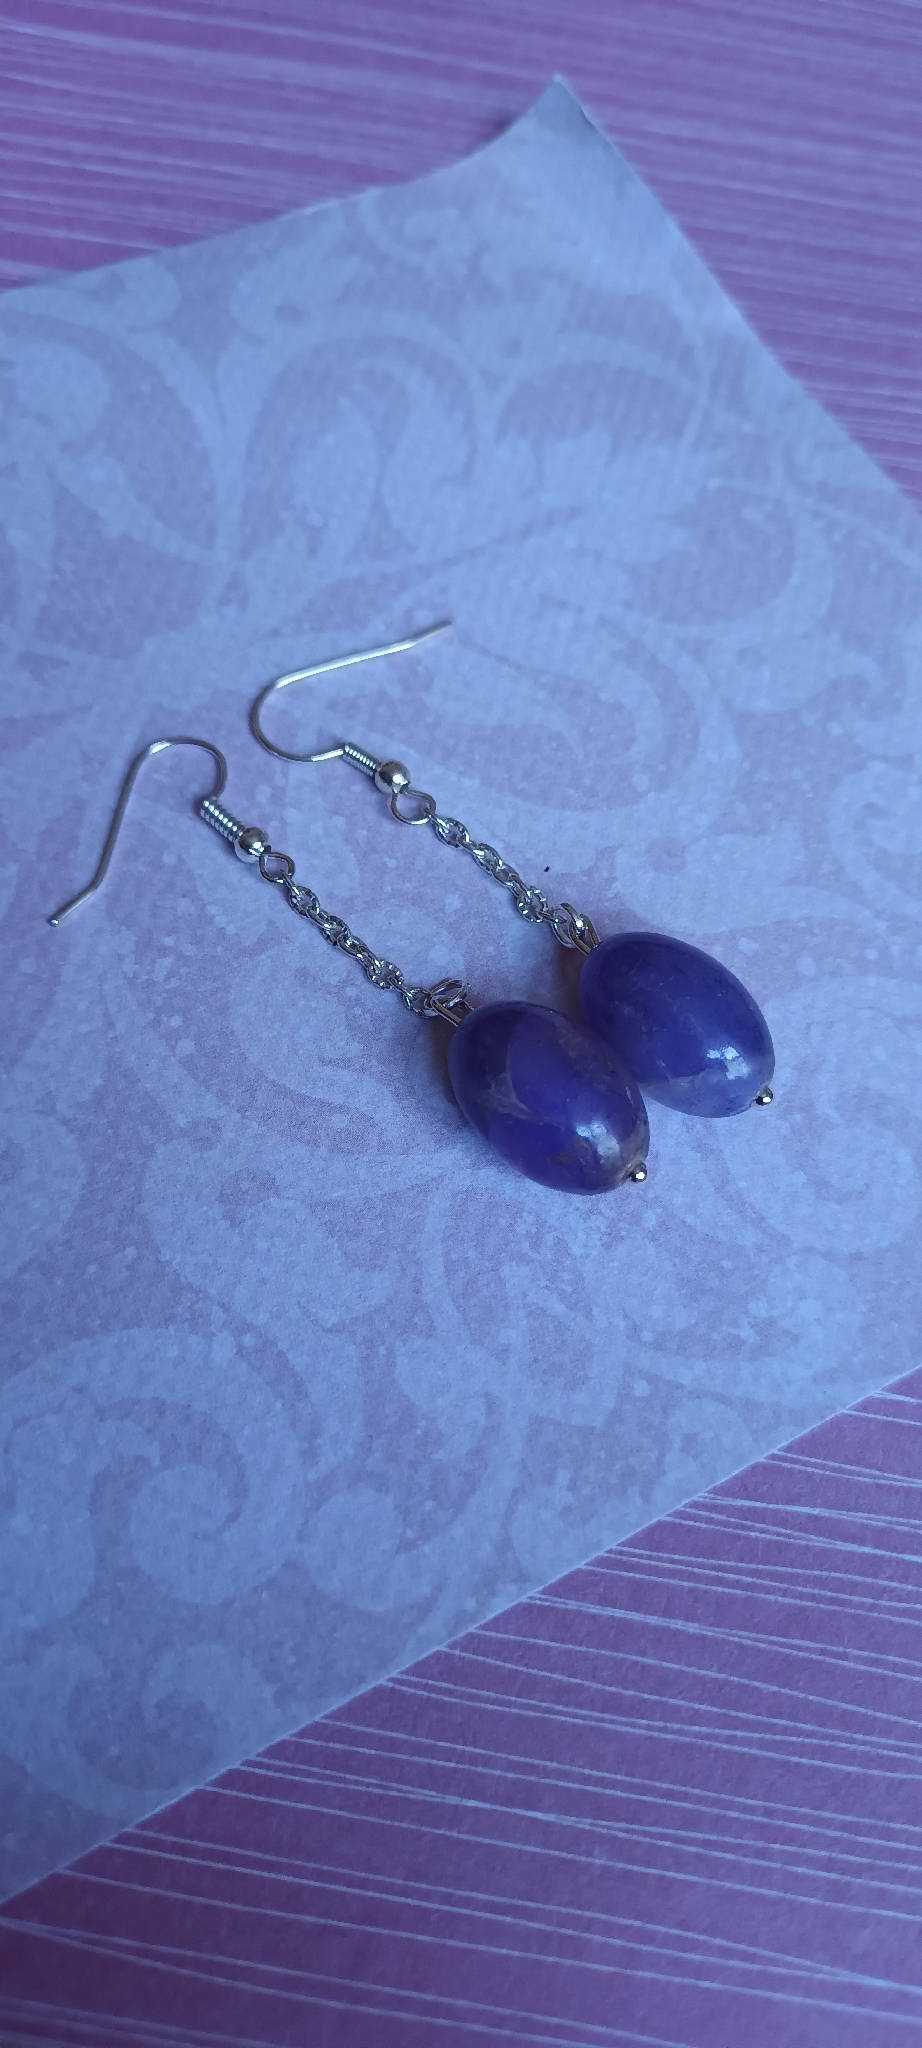 Periwinkle chain earrings